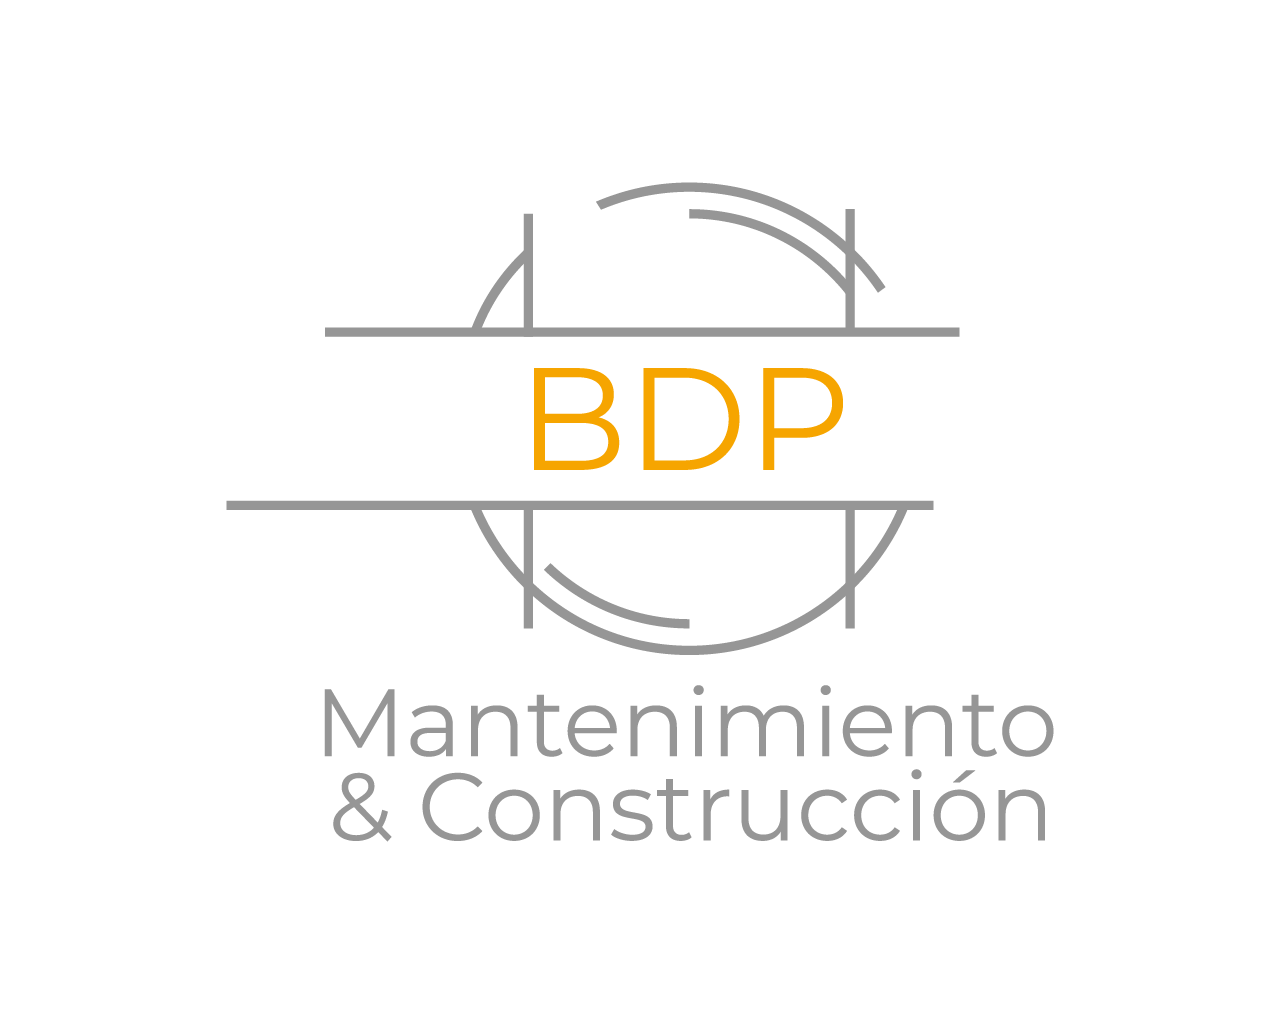 BDP Mantenimiento & Construcción